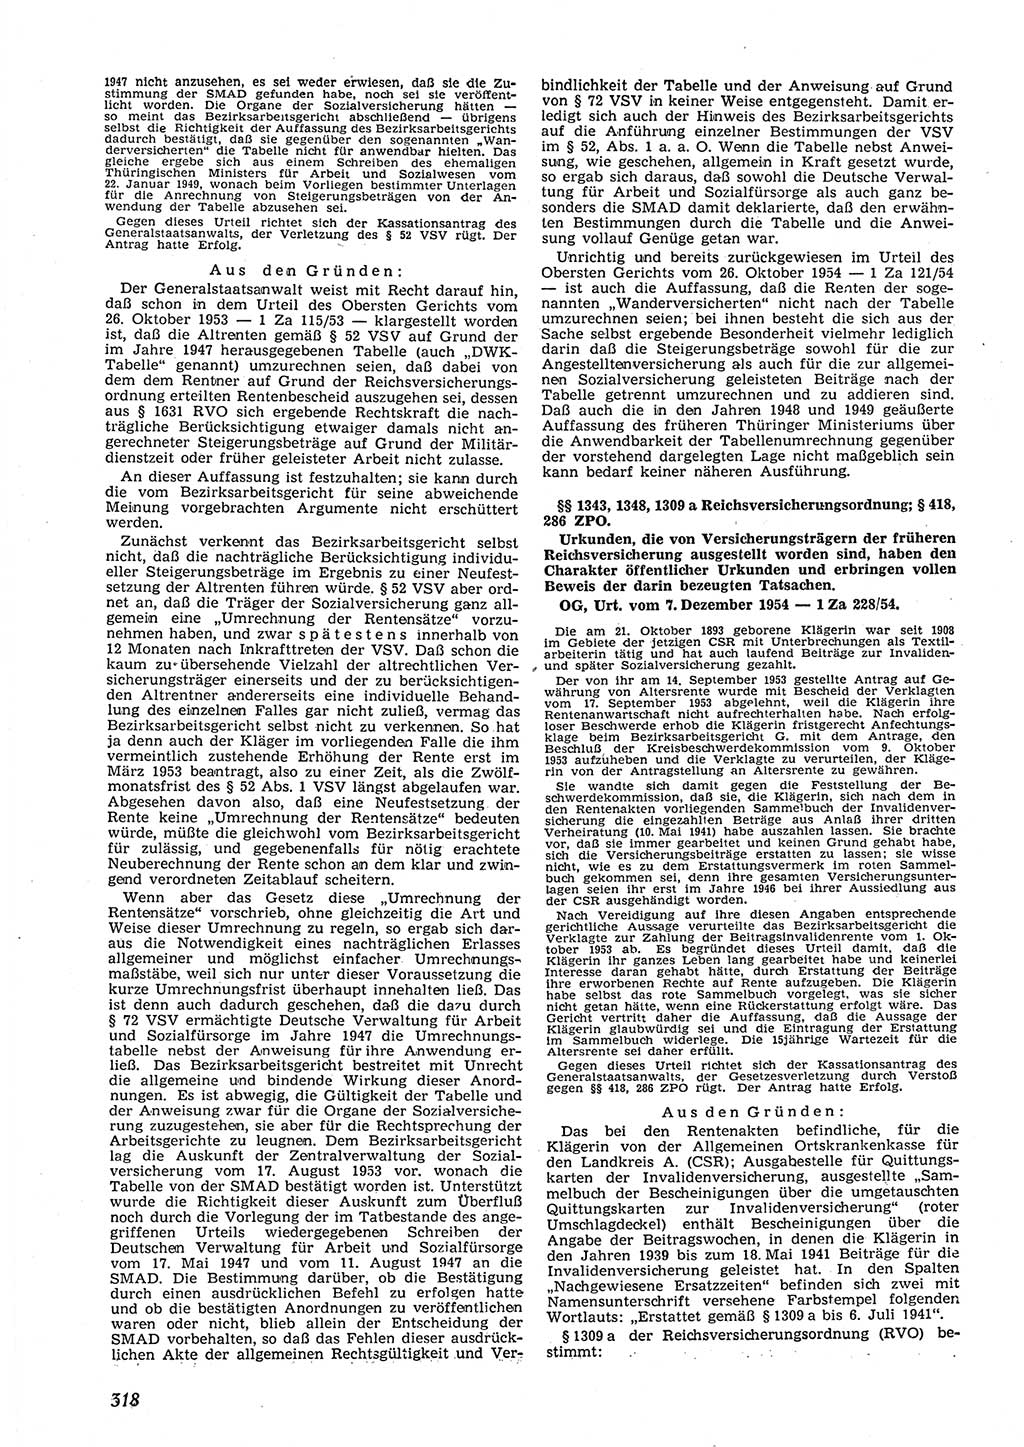 Neue Justiz (NJ), Zeitschrift für Recht und Rechtswissenschaft [Deutsche Demokratische Republik (DDR)], 9. Jahrgang 1955, Seite 318 (NJ DDR 1955, S. 318)